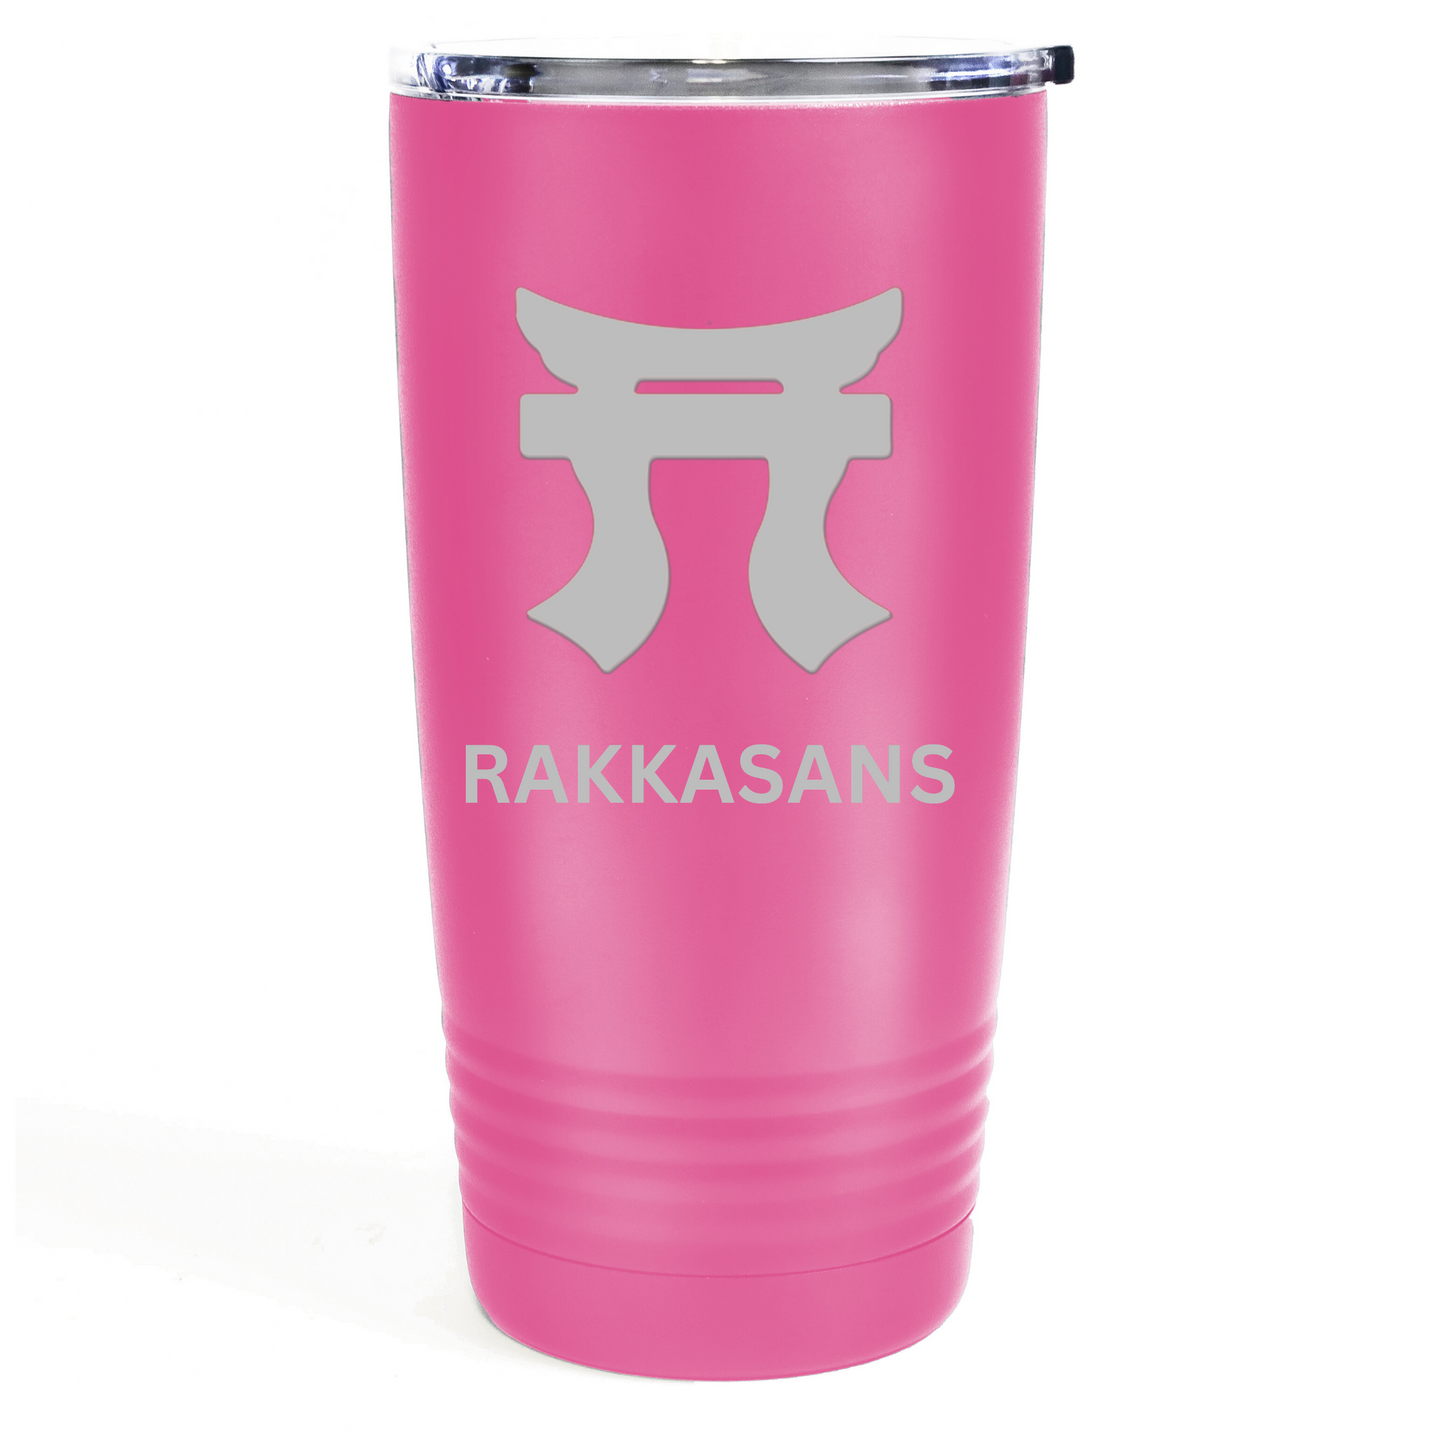 "Pink Rakkasans 20oz Stainless Steel Tumbler with Laser Engraved Design."